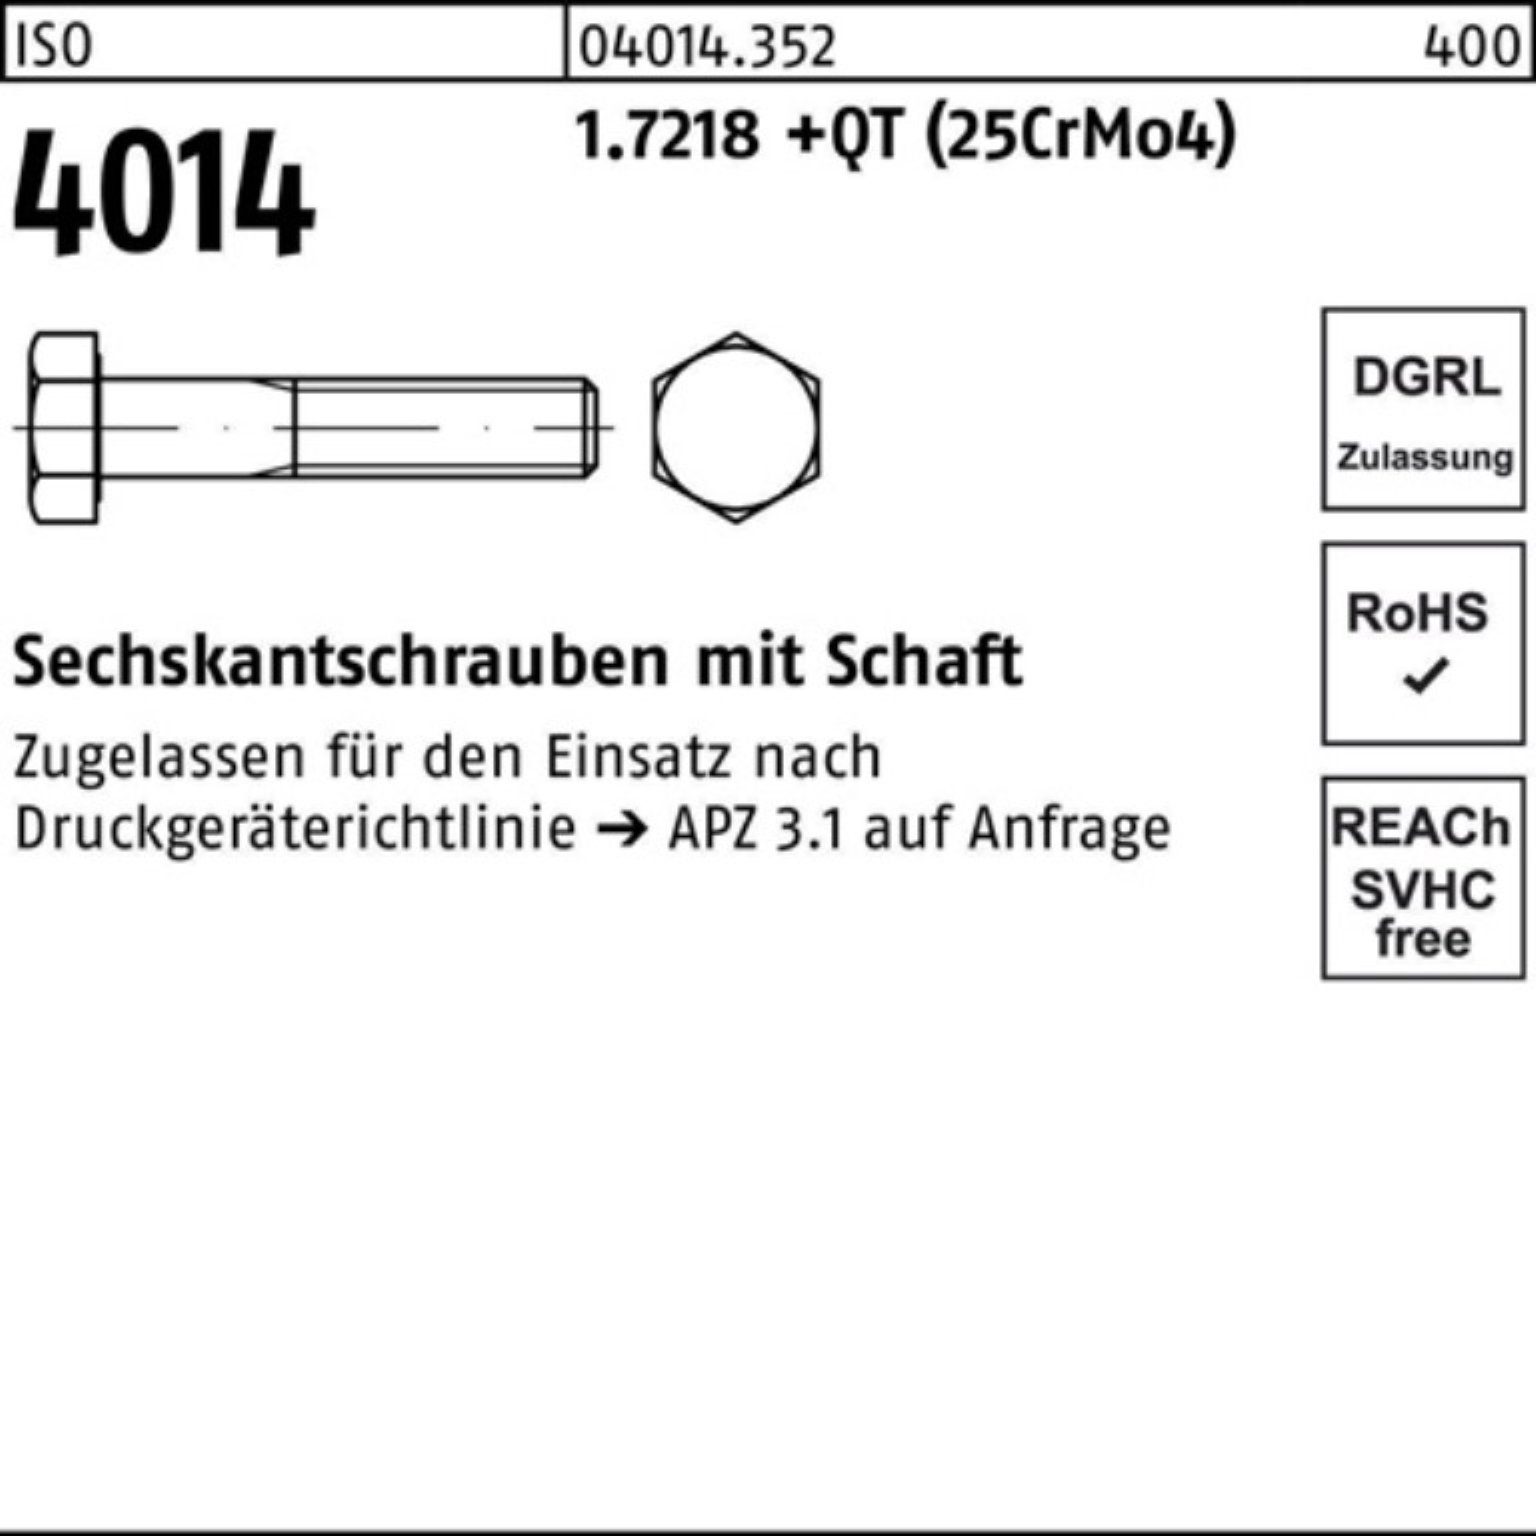 Schaft Sechskantschraube +QT 1.7218 Bufab Sechskantschraube 4014 Pack (25Cr 100 M12x ISO 100er